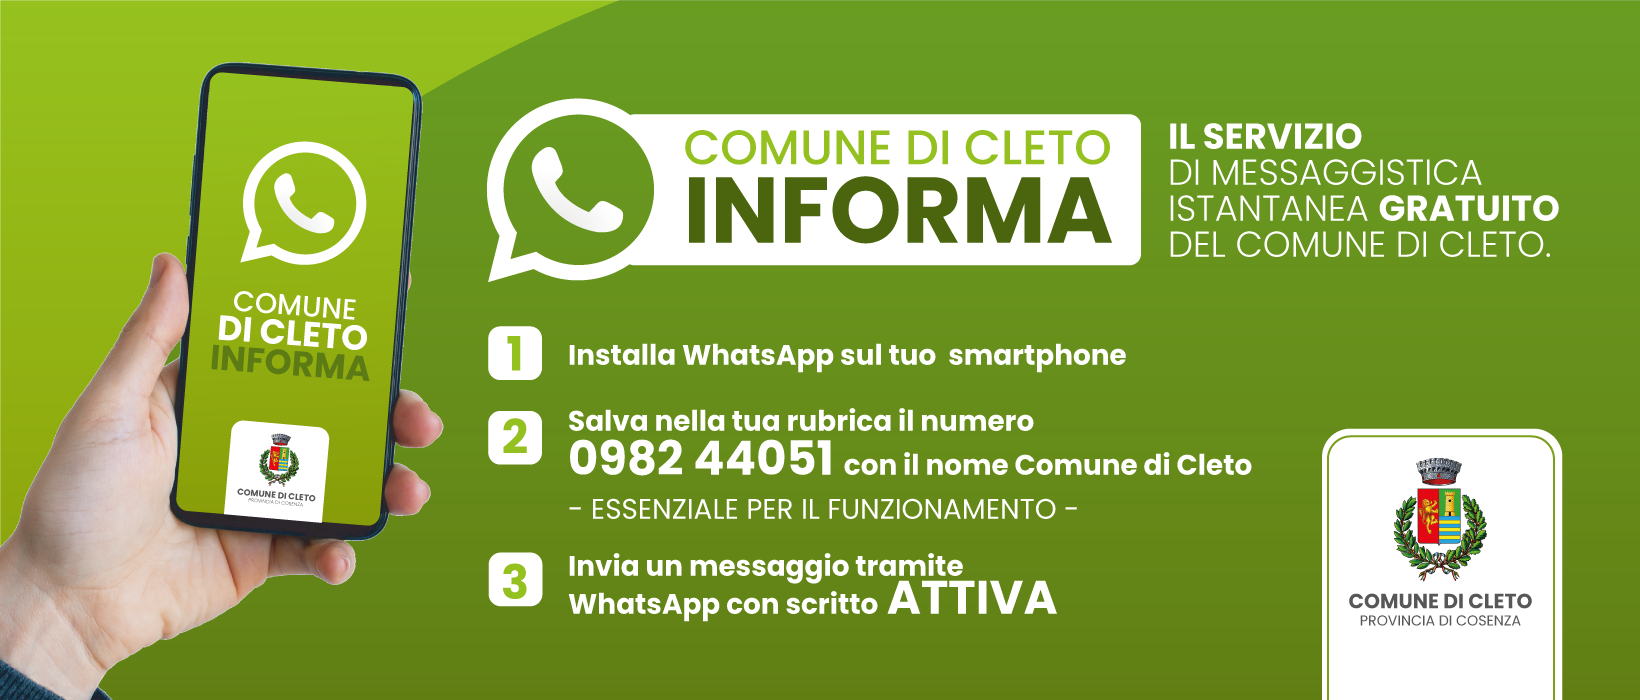 Servizio di messaggistica istantanea WhatsApp "Comune di Cleto Informa"